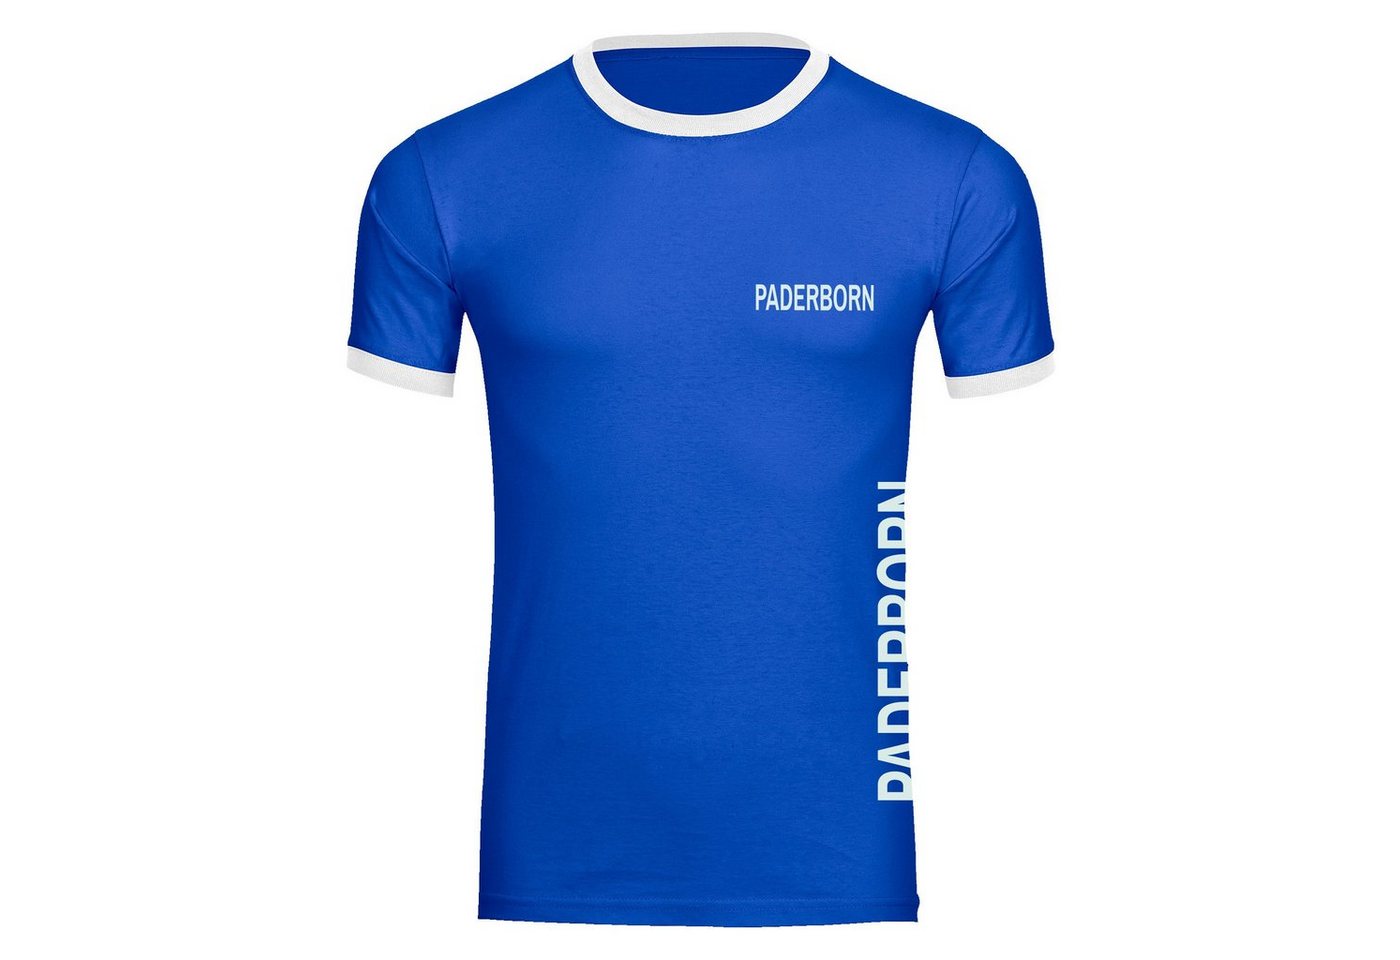 multifanshop T-Shirt Kontrast Paderborn - Brust & Seite - Männer von multifanshop